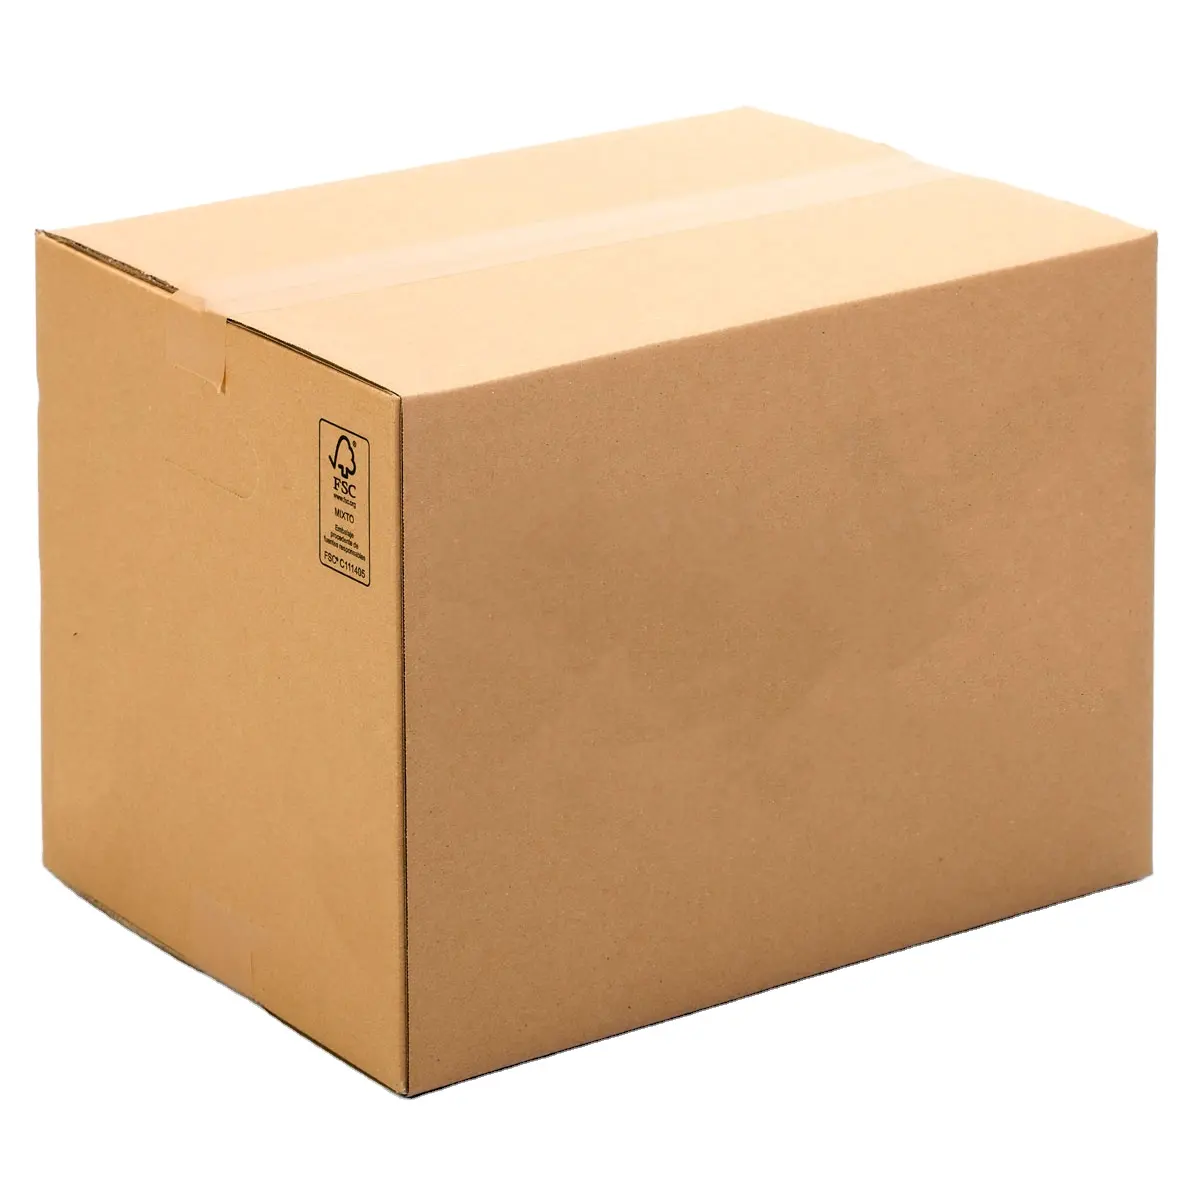 As melhores caixas de papelão 50x35x35 cms fortes feitas com tampas para fácil movimento e embalagem para remoções. Disco de vinil